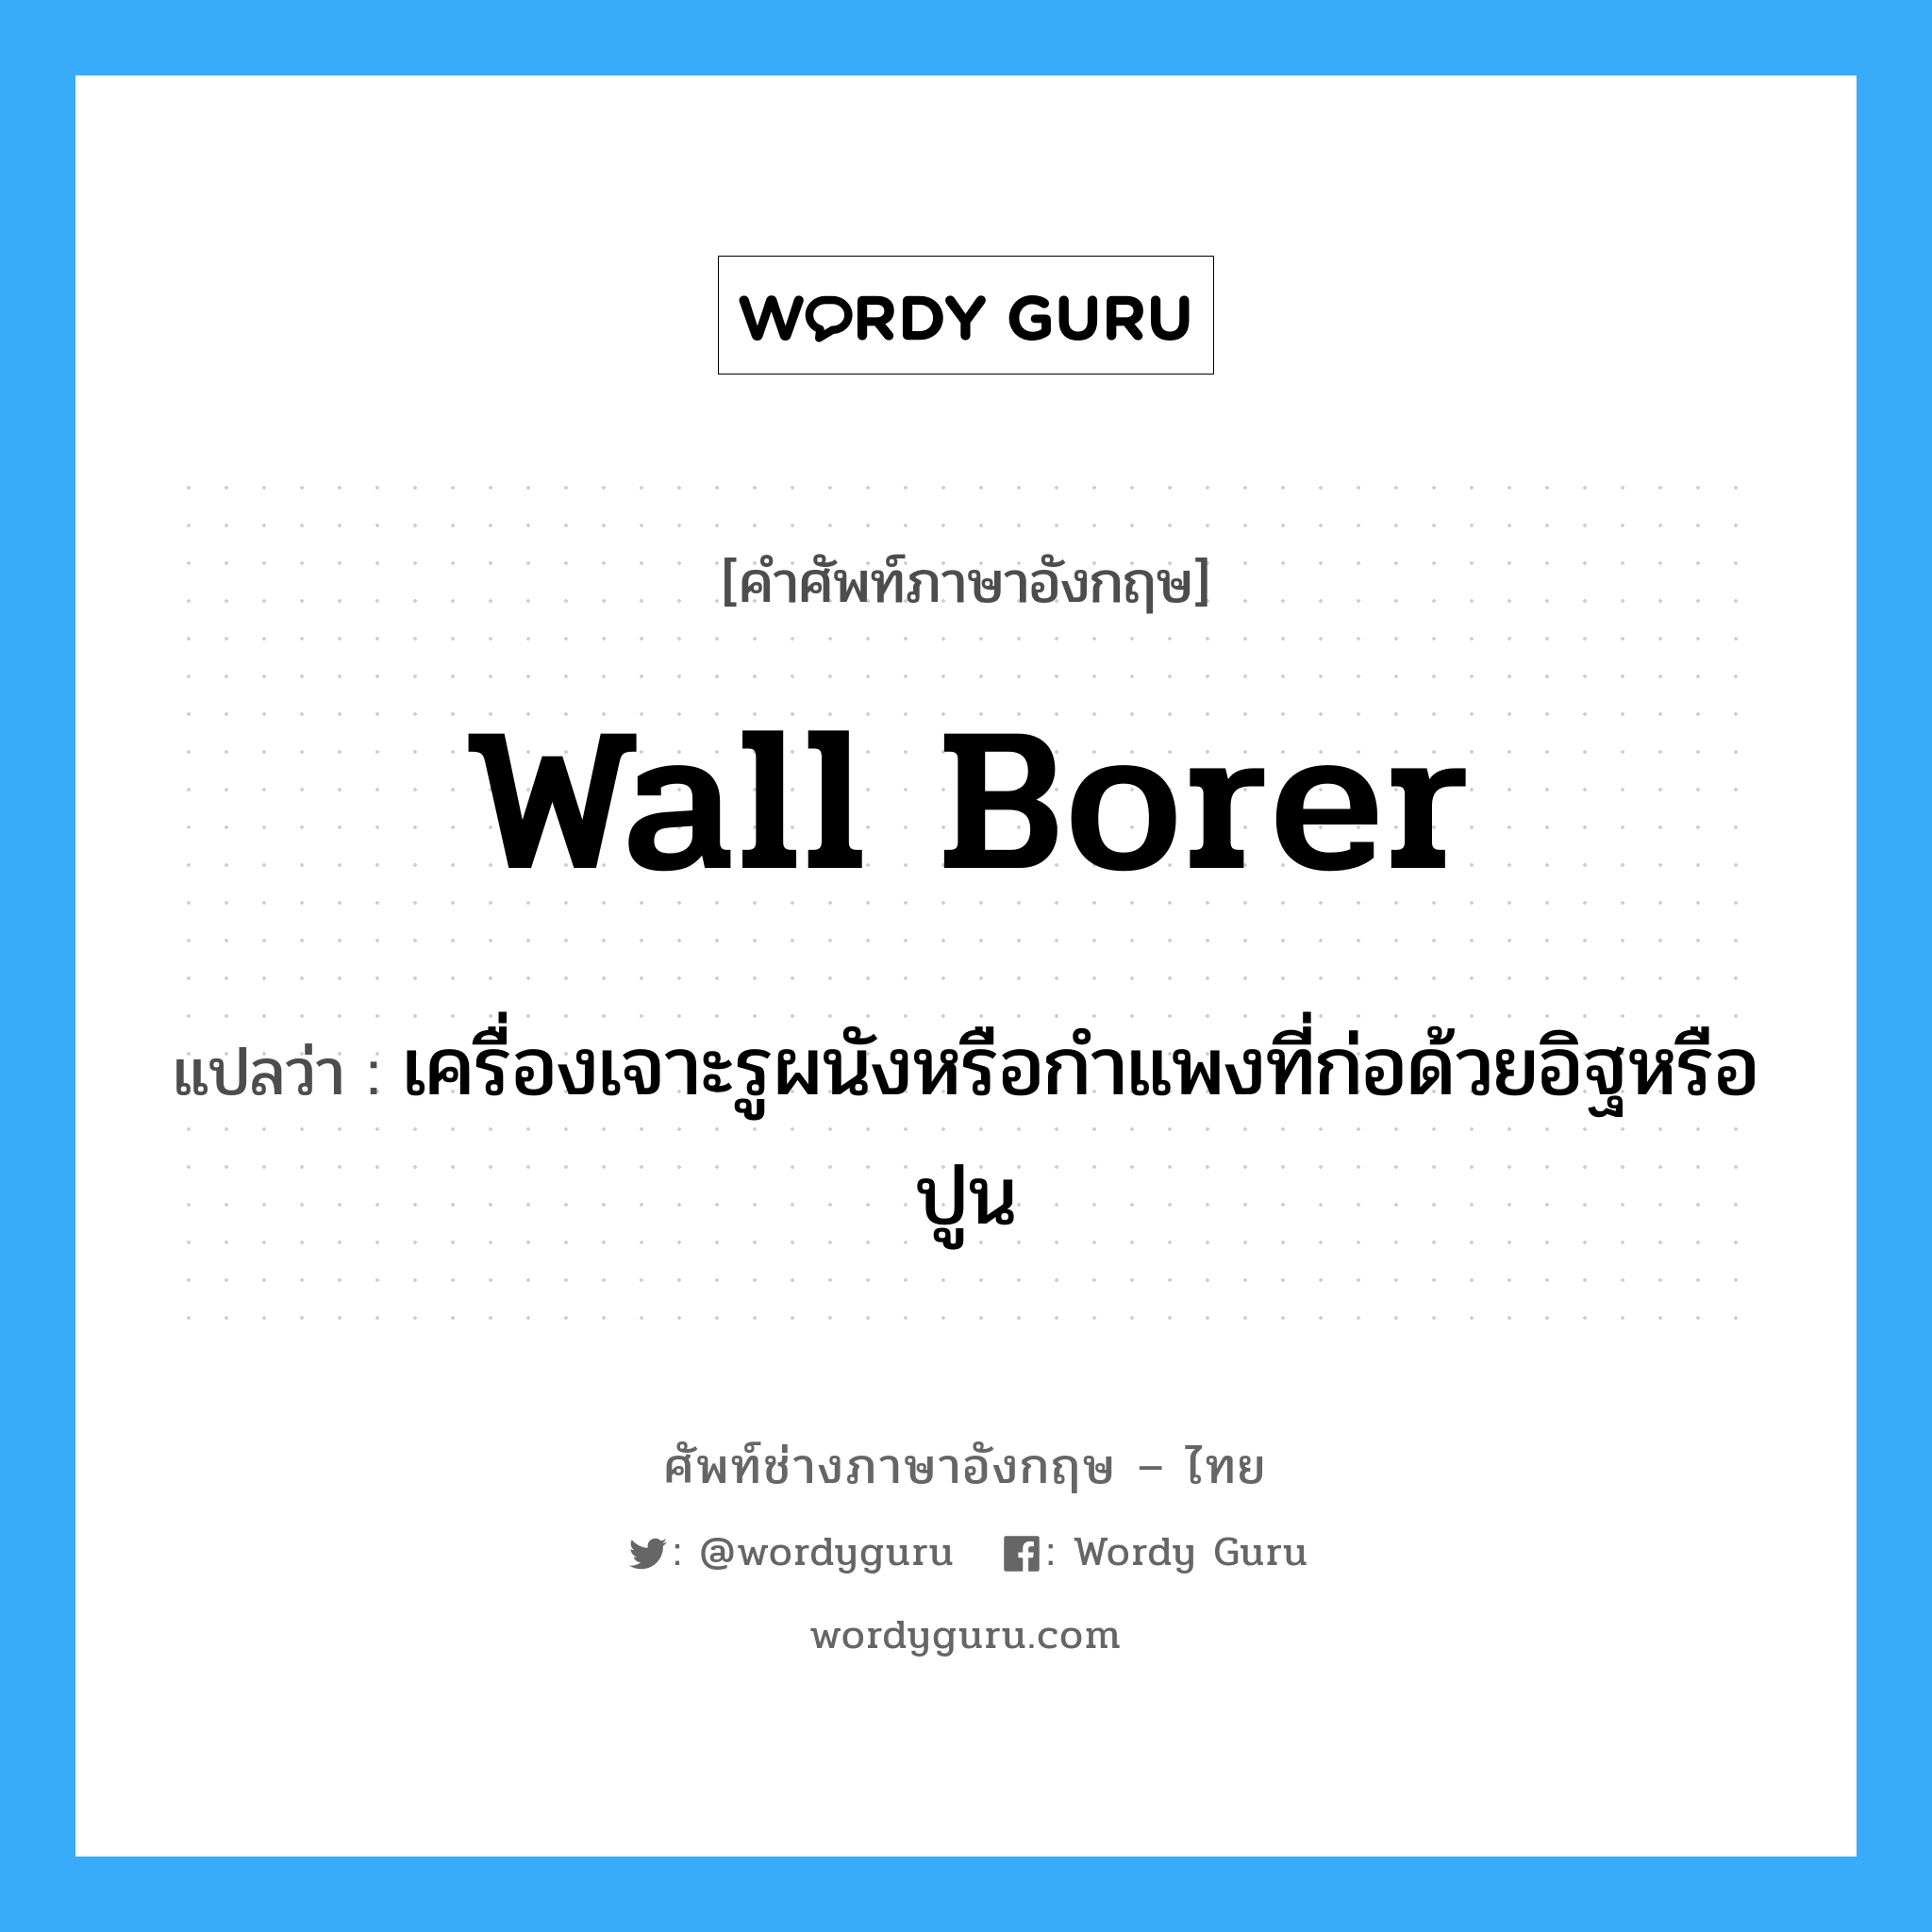 wall borer แปลว่า?, คำศัพท์ช่างภาษาอังกฤษ - ไทย wall borer คำศัพท์ภาษาอังกฤษ wall borer แปลว่า เครื่องเจาะรูผนังหรือกำแพงที่ก่อด้วยอิฐหรือปูน